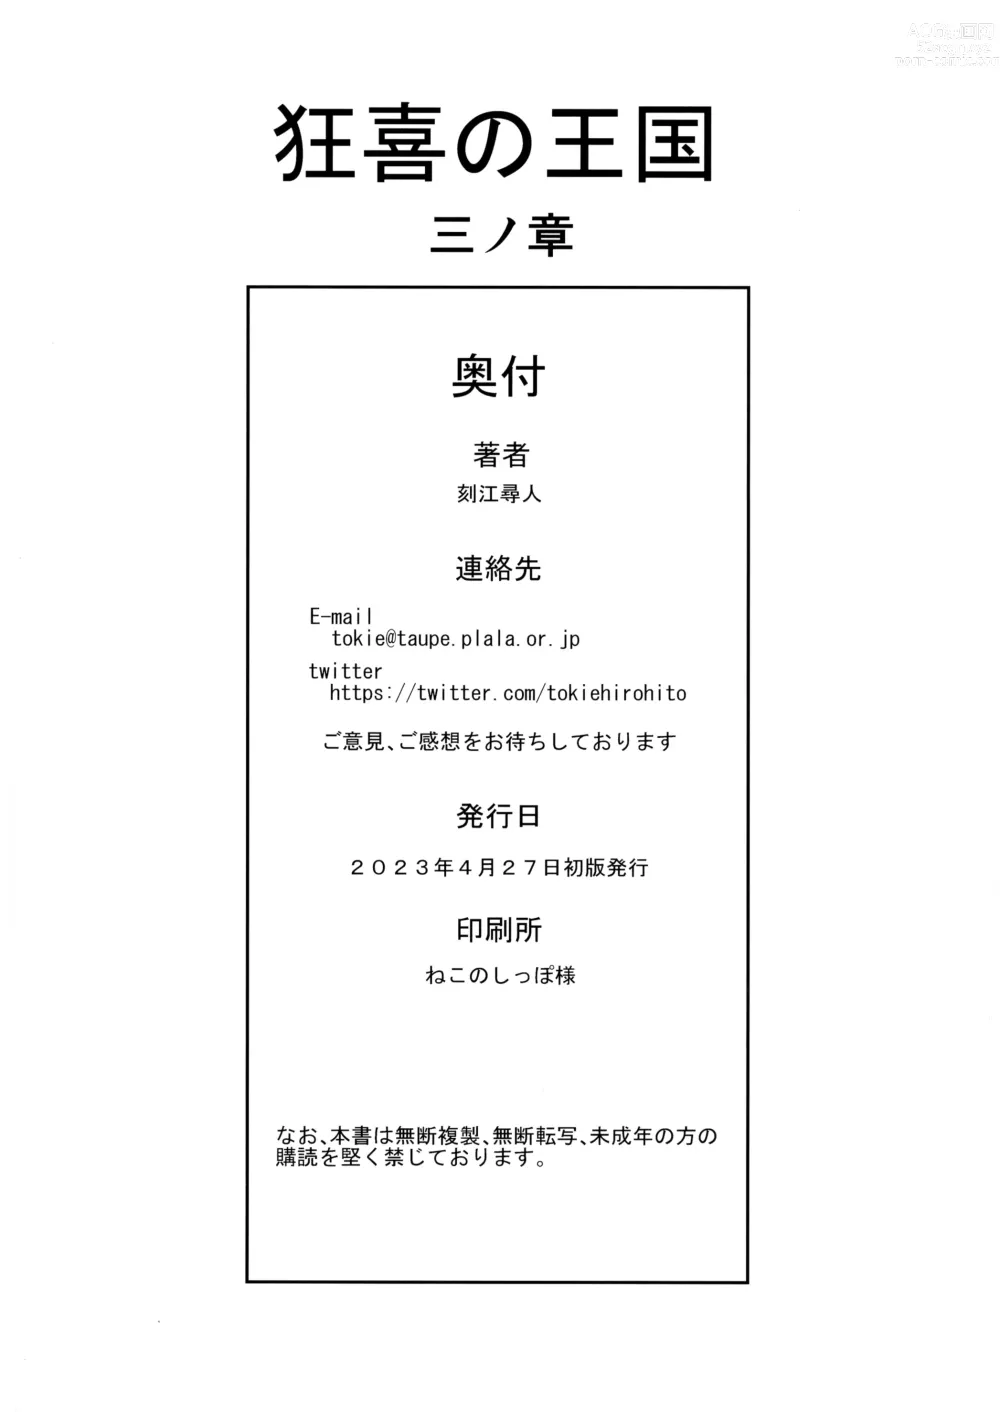 Page 36 of doujinshi Kyouki no Oukoku San no Shou